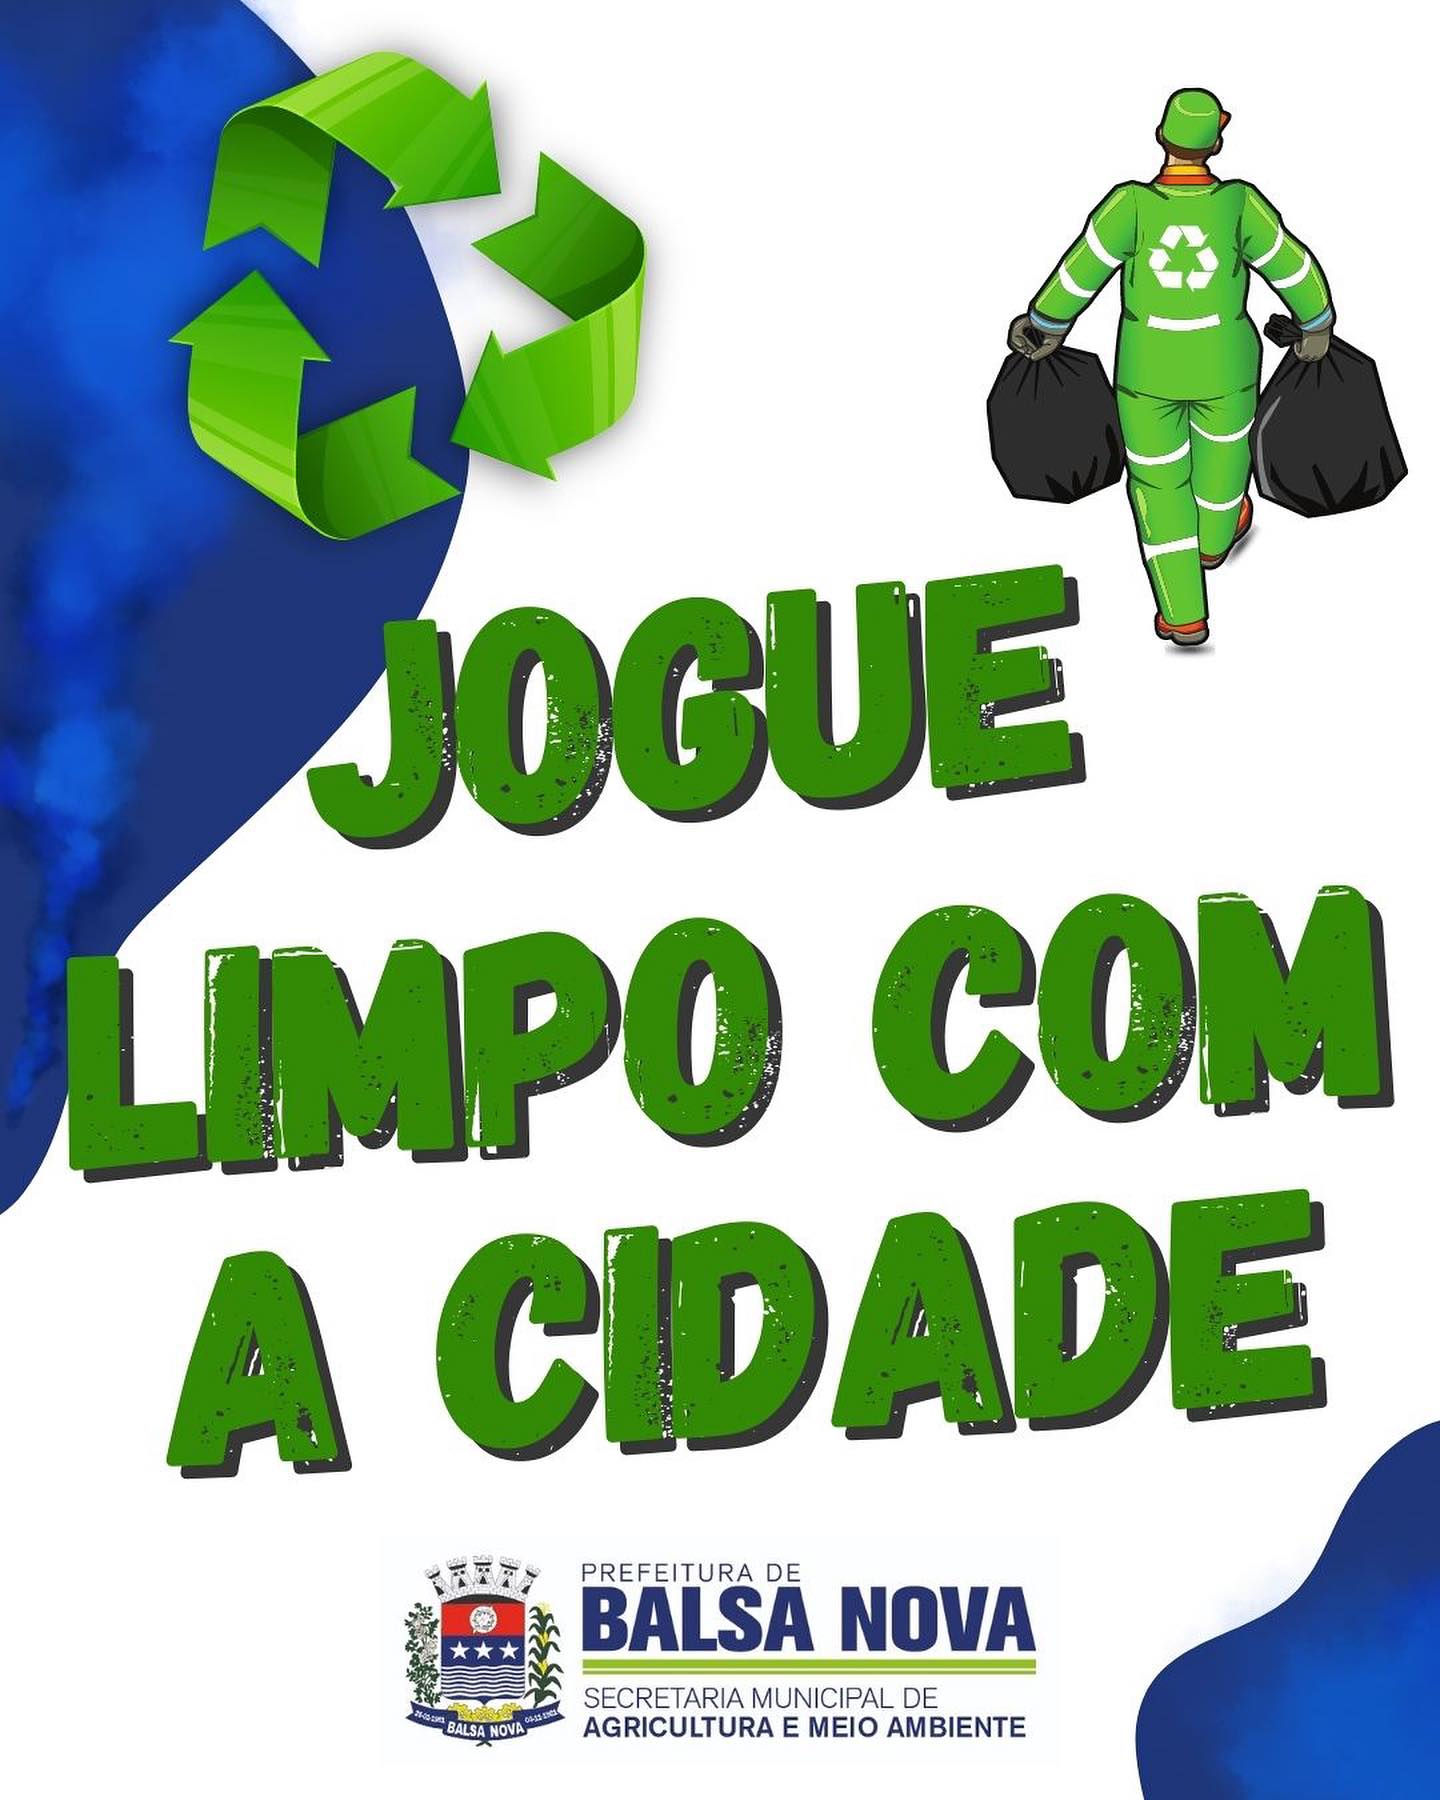 Jogue limpo com Balsa Nova - Notícias - CÂMARA DE VEREADORES DE BALSA NOVA